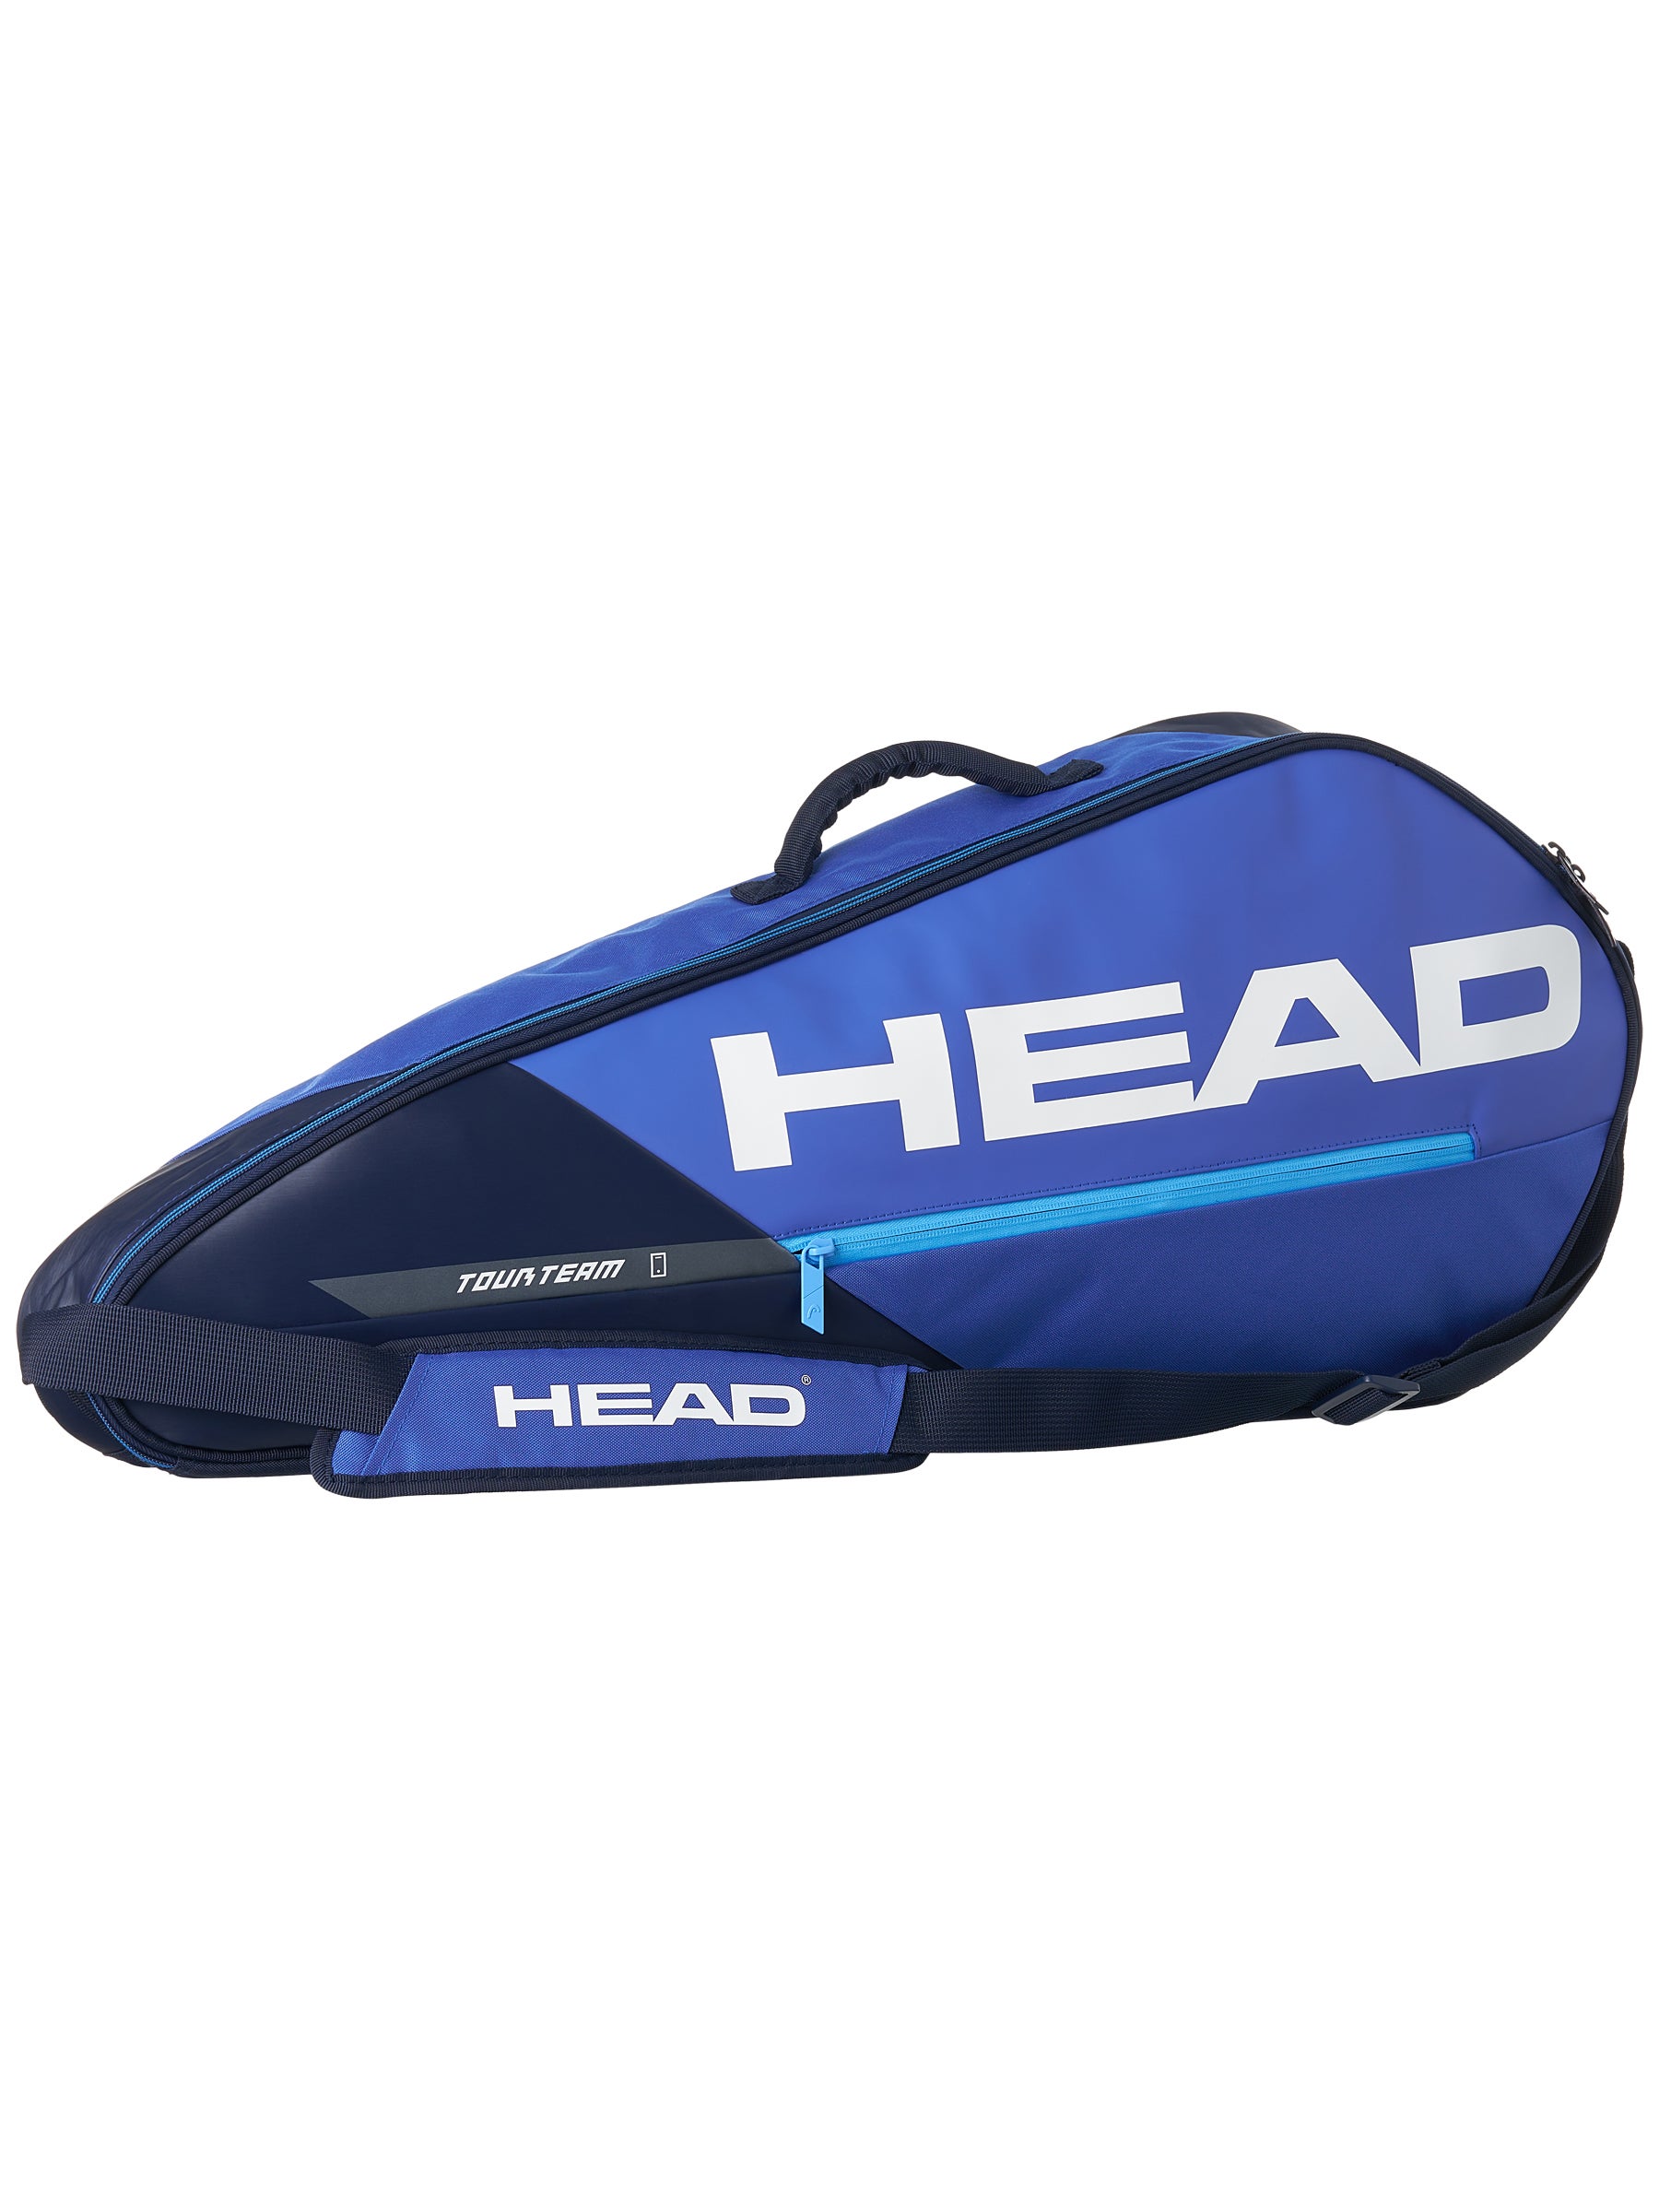 HEAD Tour Team 3R Pro Black Grey Tennis Racquet Equipment Bag Duffle Bag 